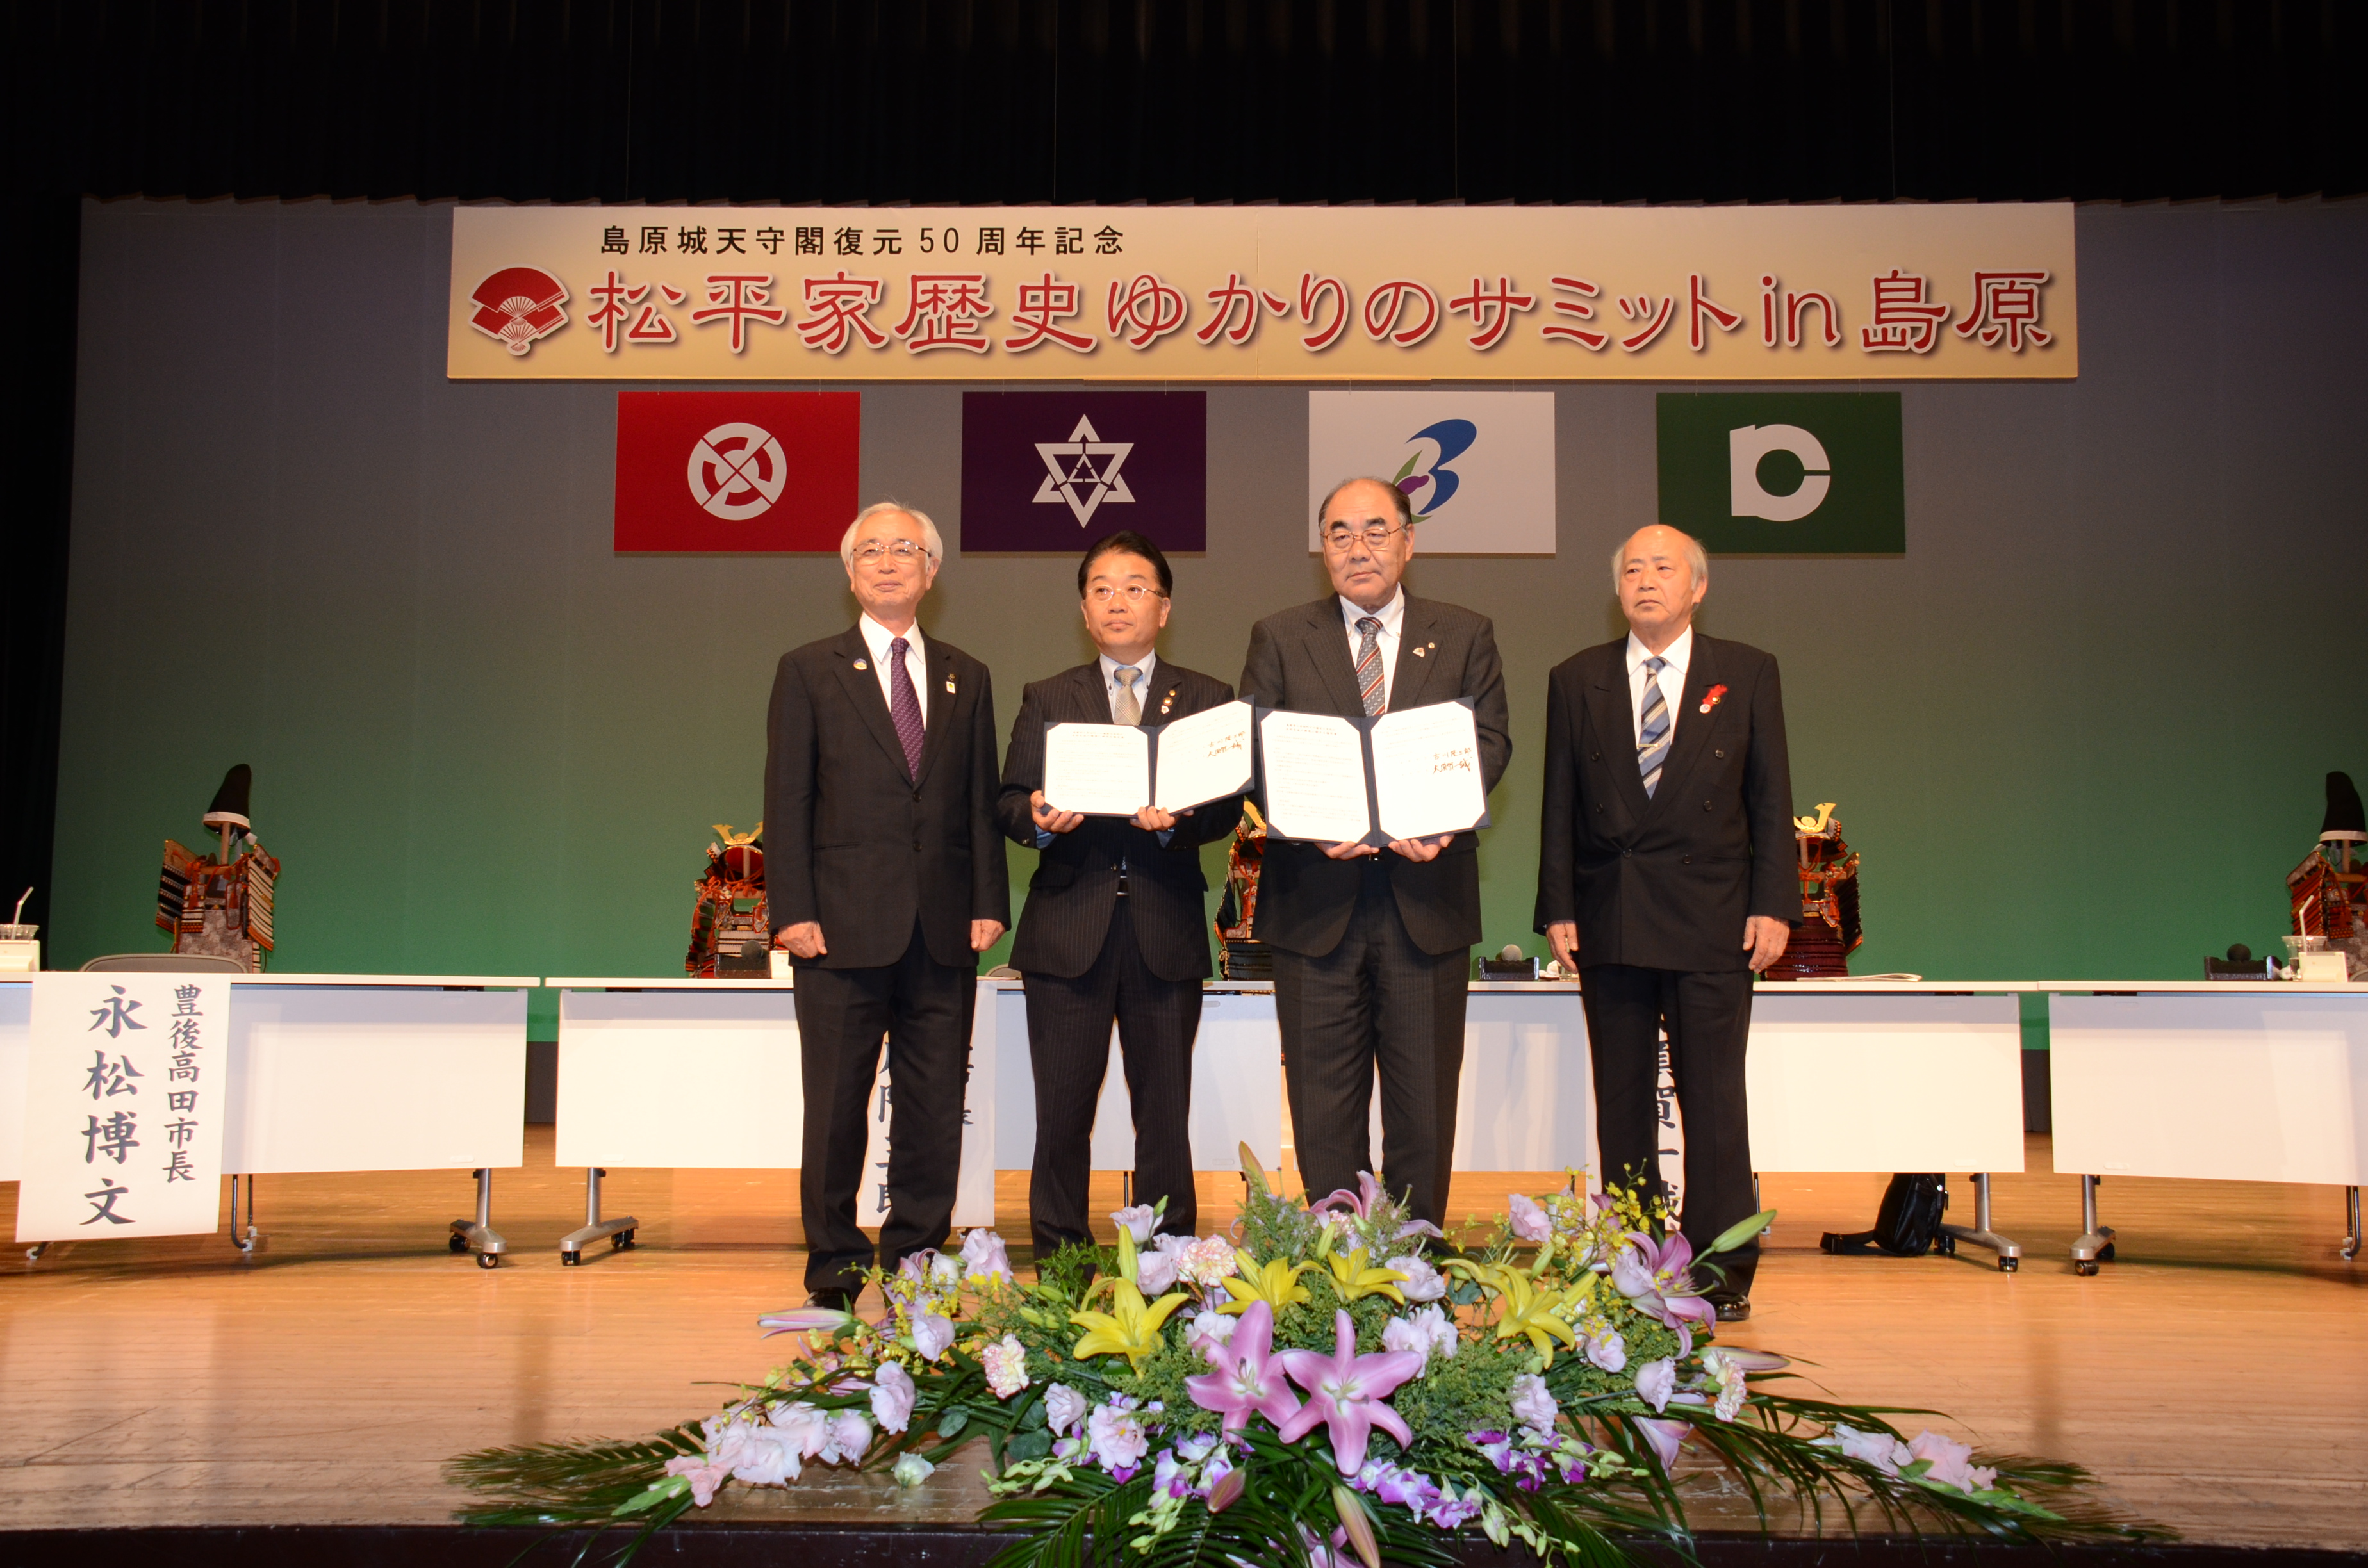 平成26年10月11日に開催した「松平家歴史ゆかりのサ ミット」において、本市と幸田町で「歴史と文化の友好交流と推進に関する協定」を締結しました